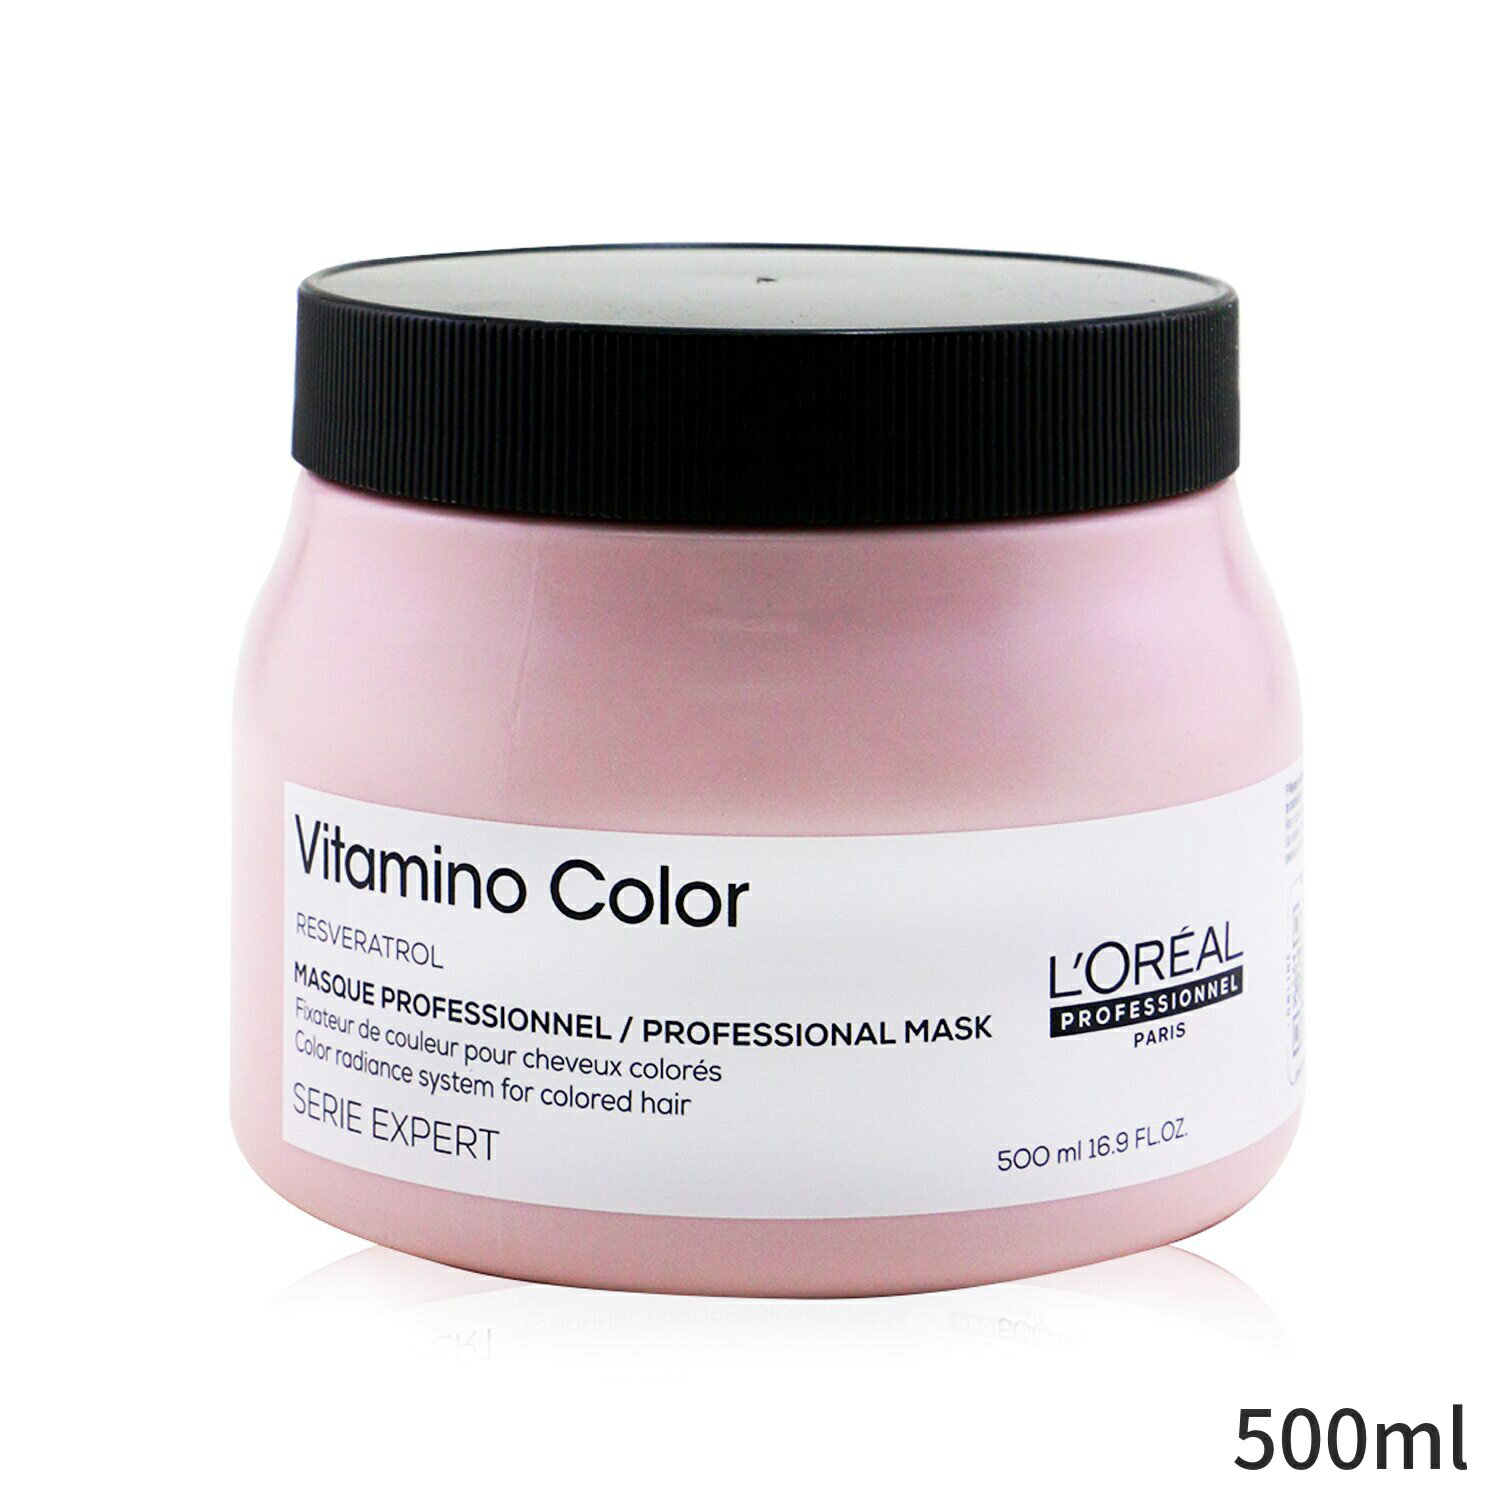 ロレアル ヘアマスク L 039 Oreal ヘアパック Professionnel Serie Expert - Vitamino Color Resveratrol Radiance System Mask (For Colored Hair) (Salon Product) 500ml ヘアケア トリートメント 母の日 プレゼント ギフト 2024 人気 ブランド コスメ